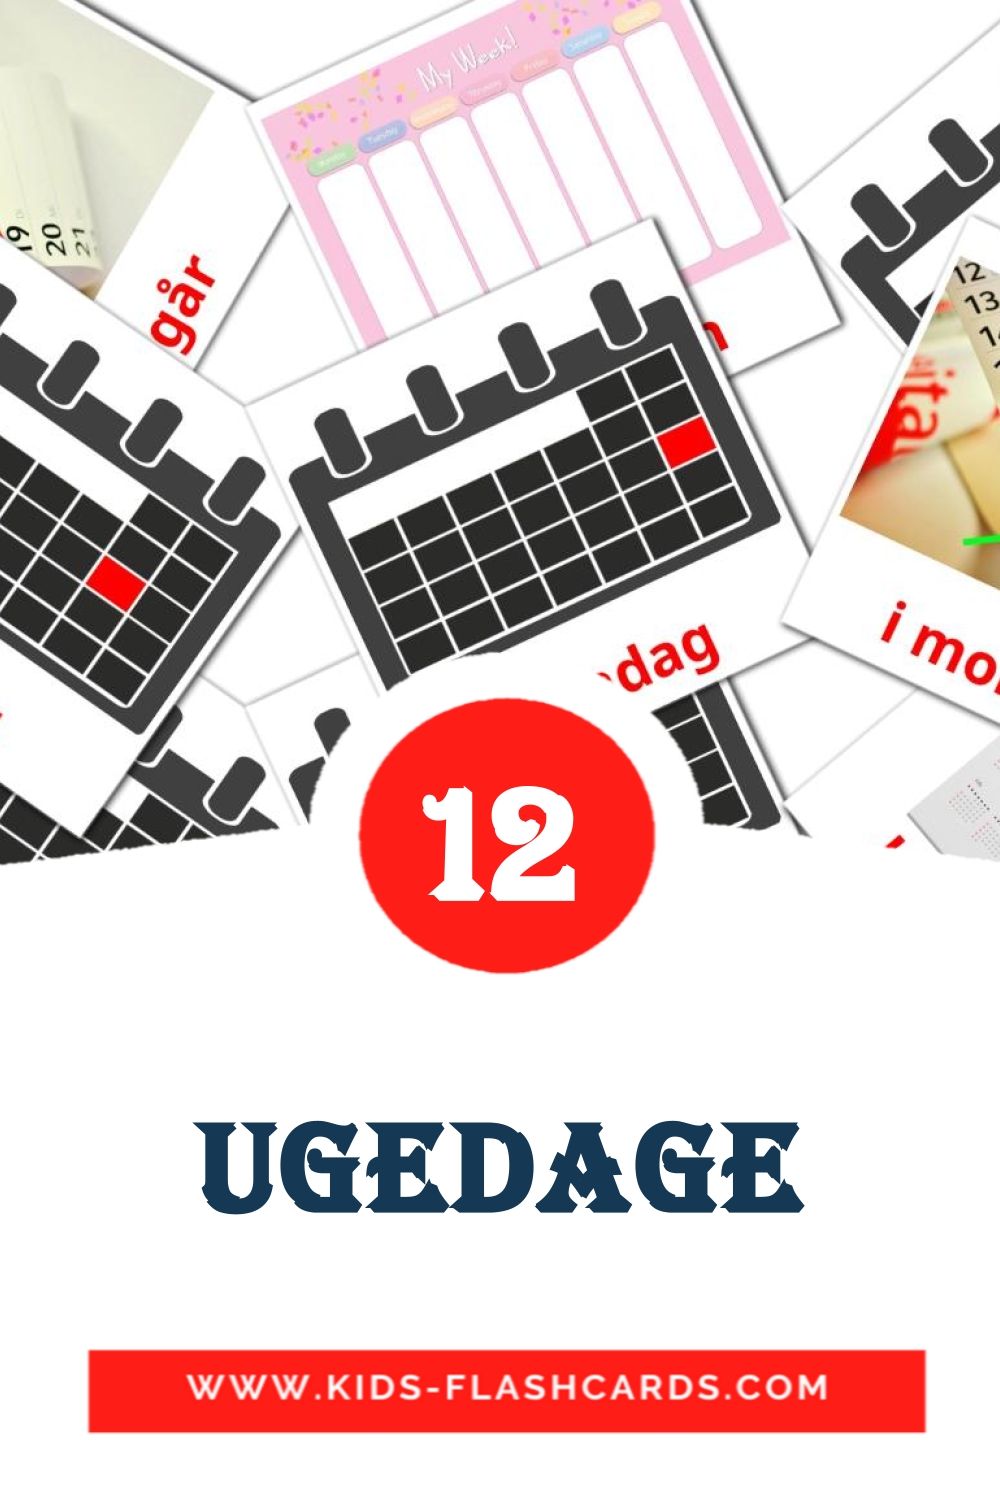 12 tarjetas didacticas de Ugedage para el jardín de infancia en dansk